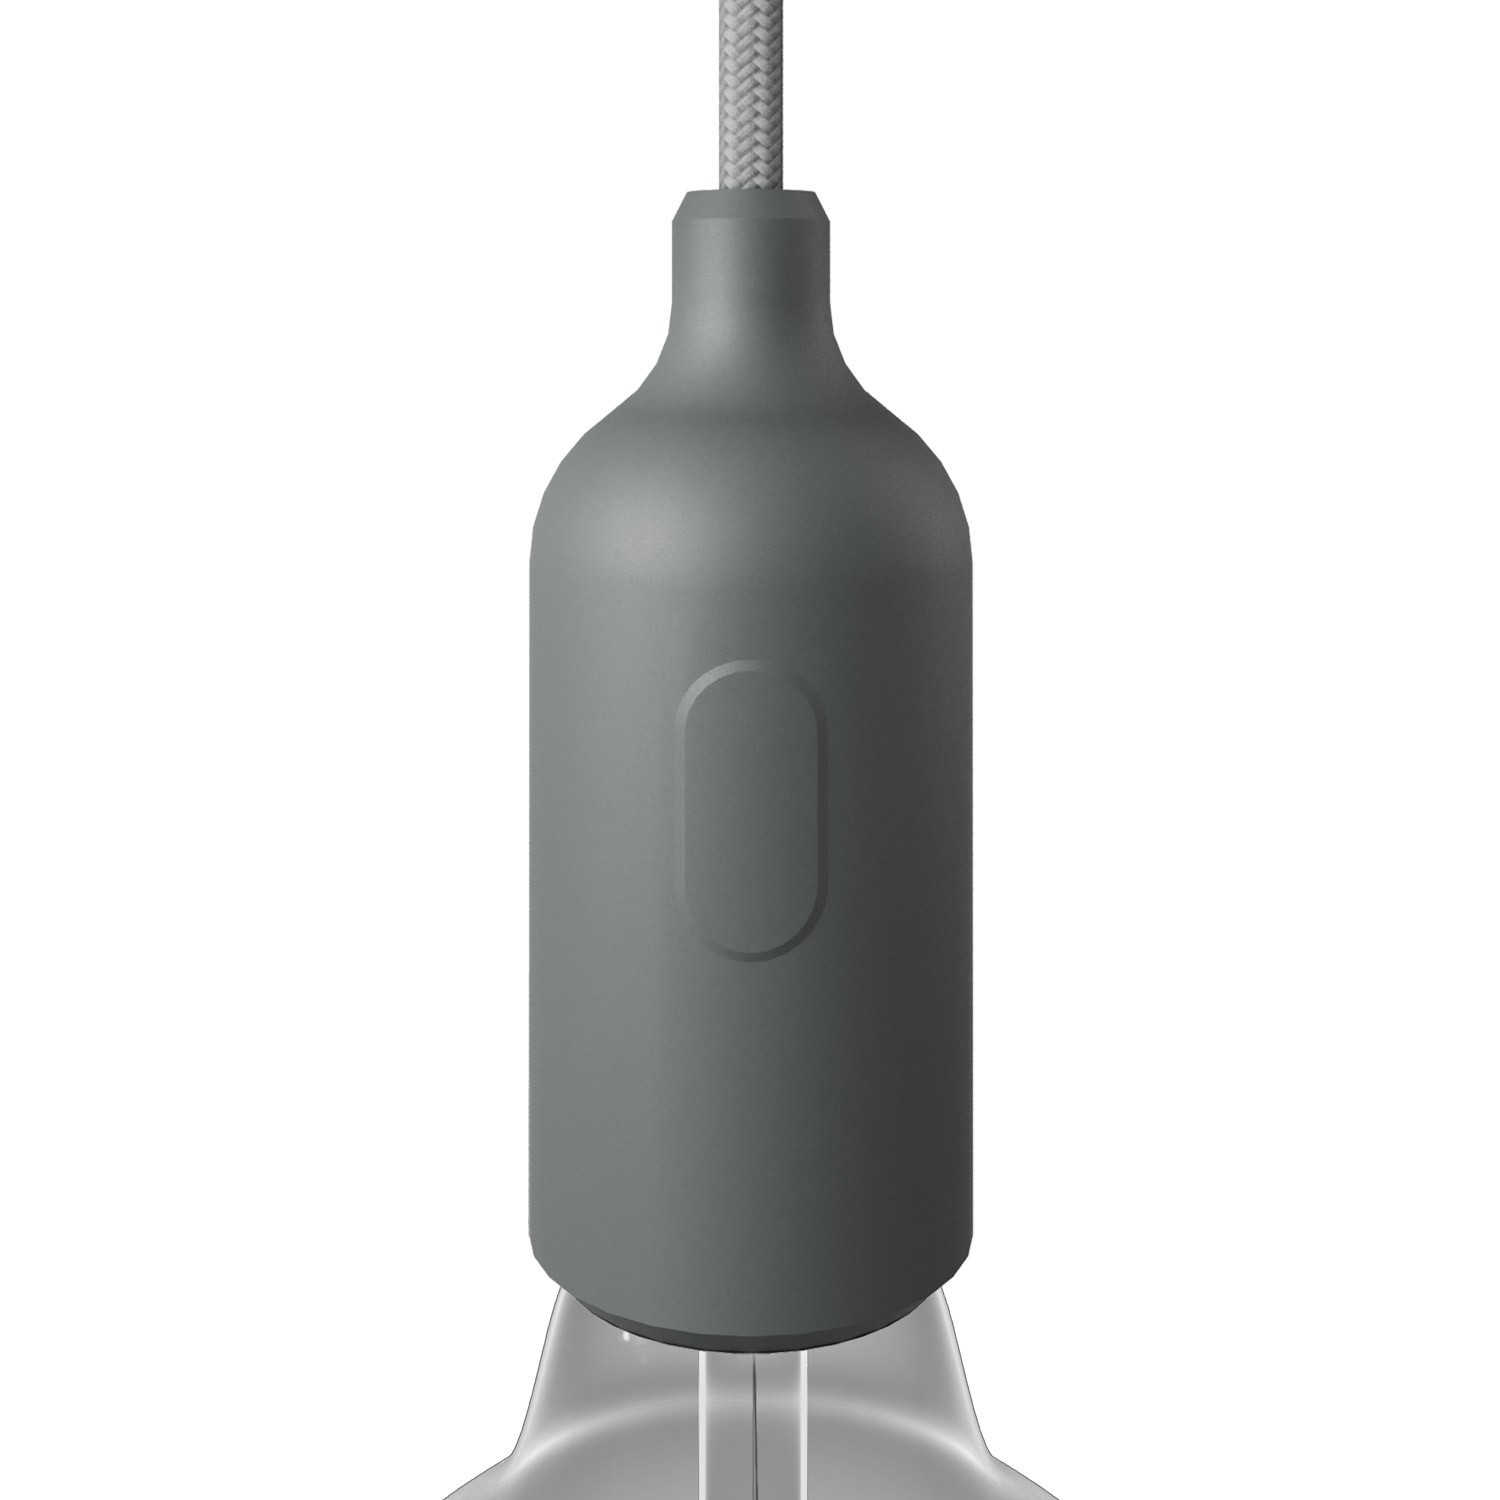 Silicone E27 lamphouderset met schakelaar en verborgen kabelklemmen